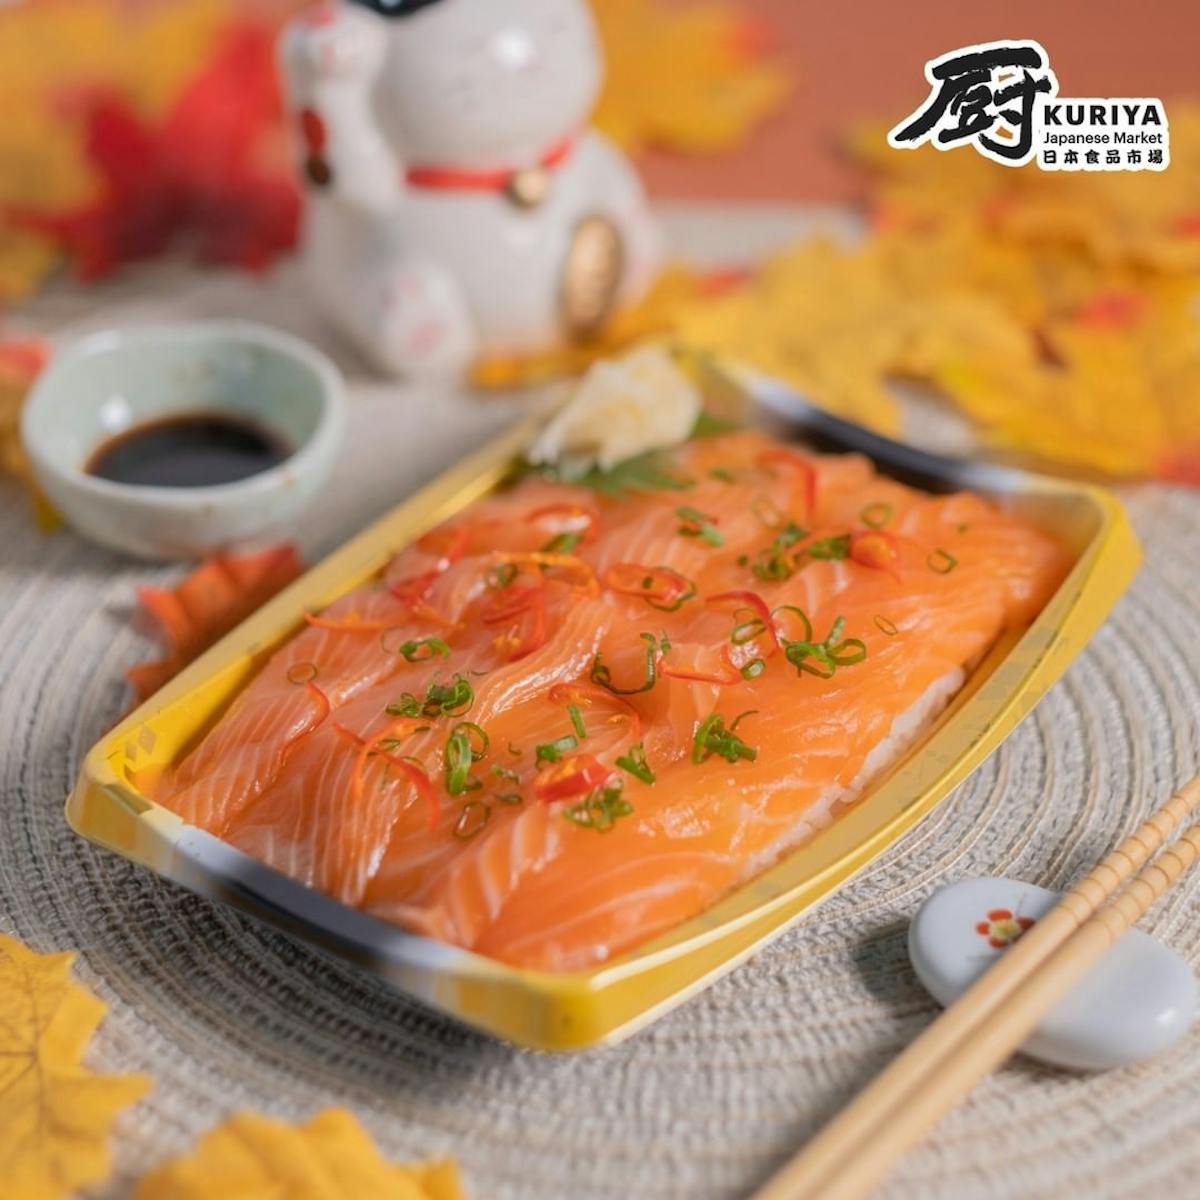 Kuriya Japanese Market $9.90 Salmon Sushi Box Deal